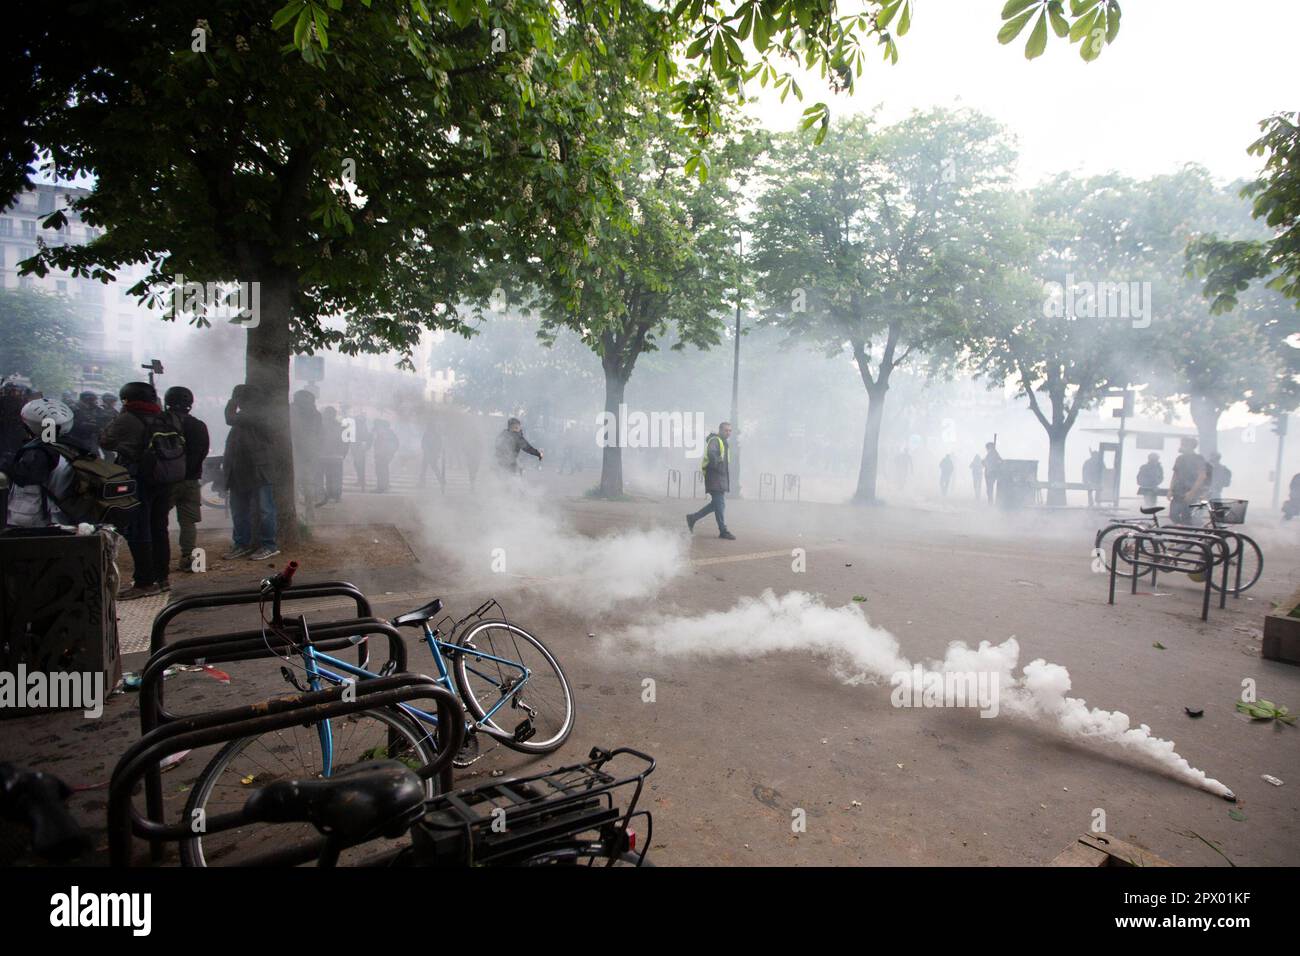 Demonstranten und französische Polizei treffen während der Bürgerkriegsaufstände am 1. Mai 2023 im Zentrum von Paris aufeinander. Viele kamen zu Wort, um ihre Abneigung gegen Präsident Macron und seine derzeitige Politik zum Ausdruck zu bringen. Bild des Austritts von Tränengas aus dem Kanister. Stockfoto